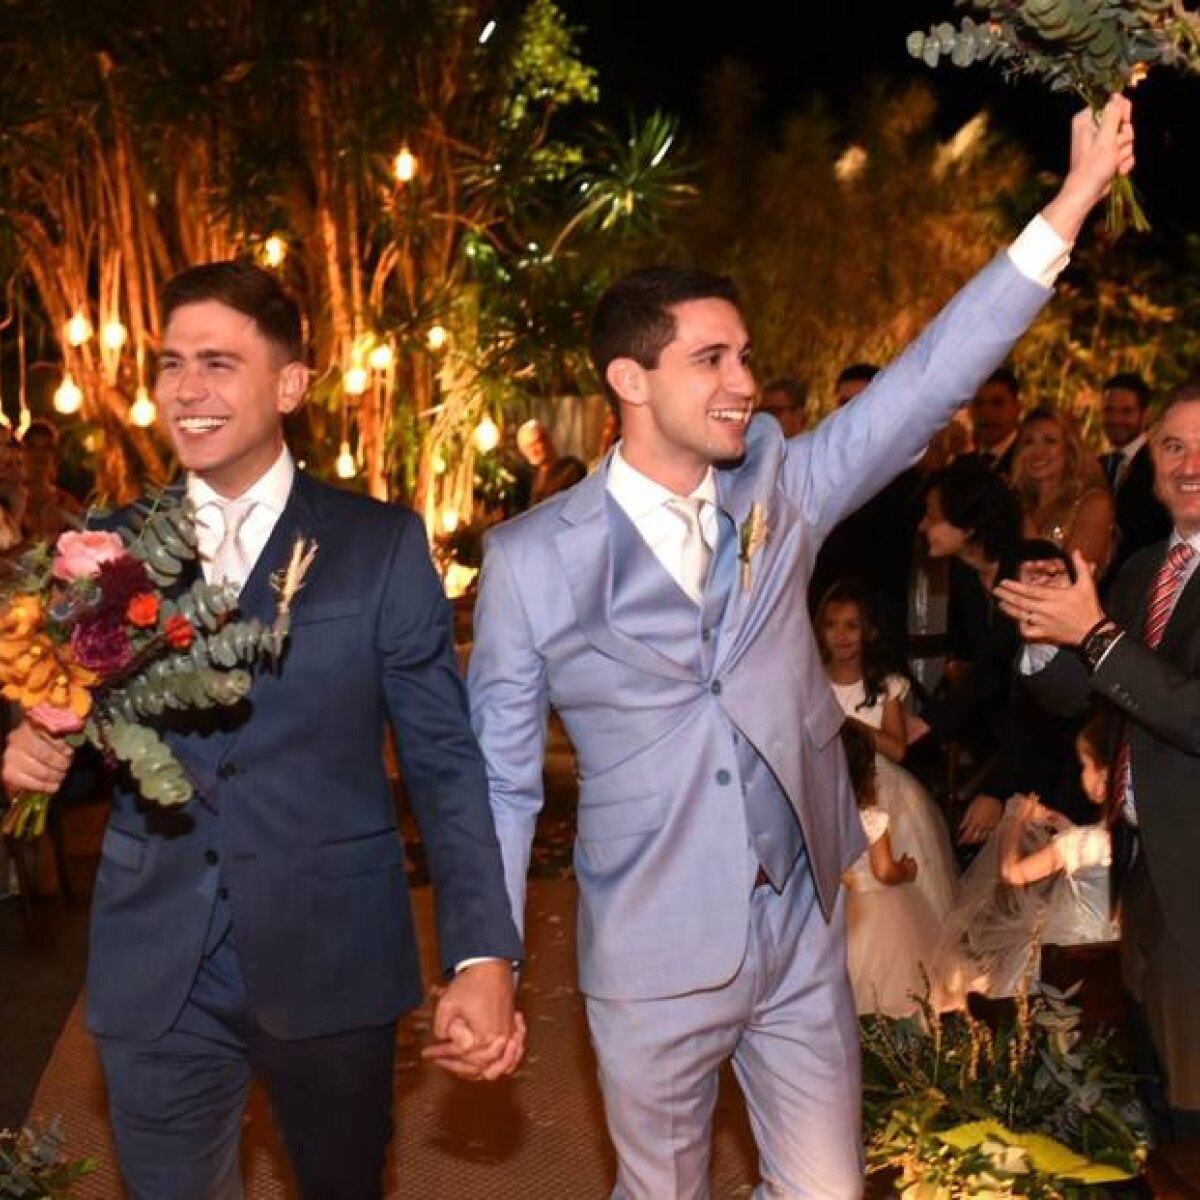 Repórteres da TV Globo se casam no Rio de Janeiro em grande festa - Estadão